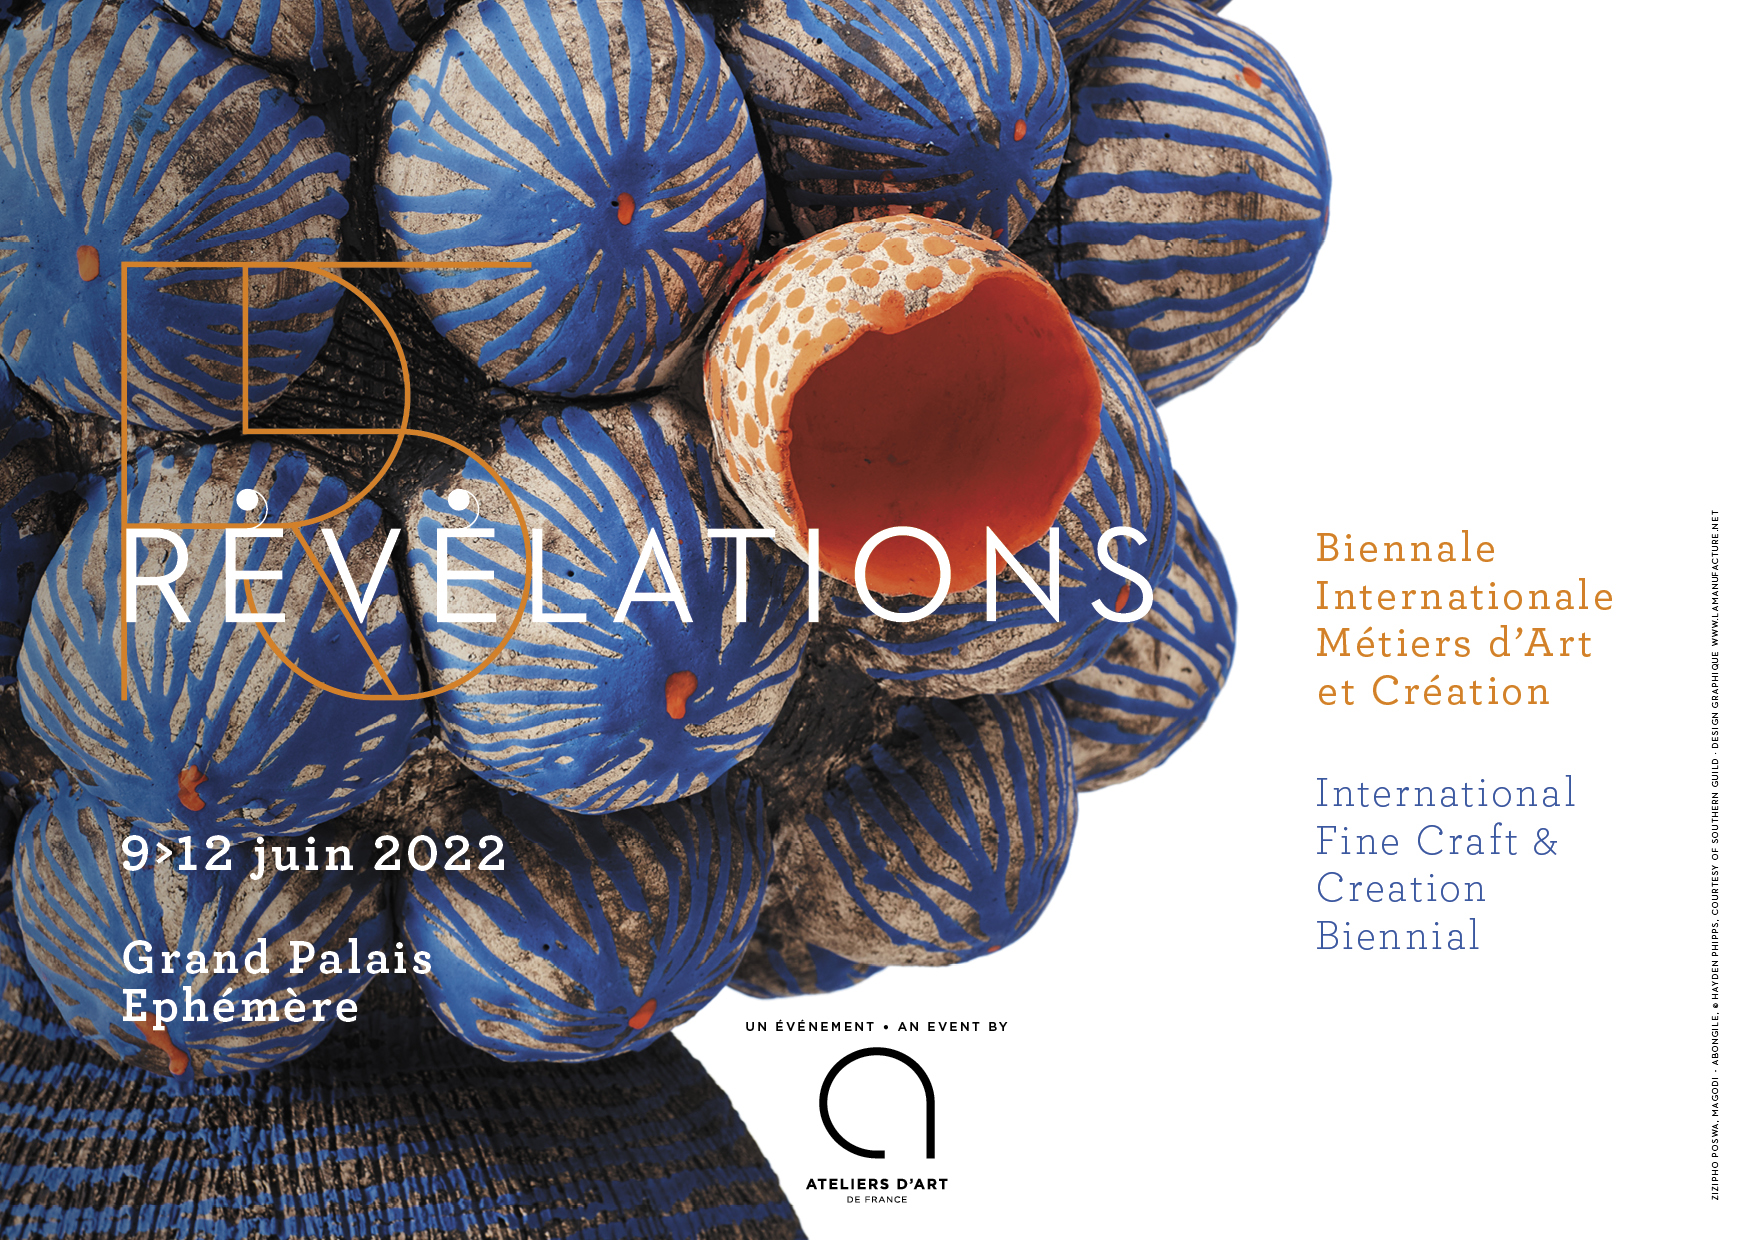 Save the Date - Révélations, Biennale Internationale des Métiers d'Art et de Création